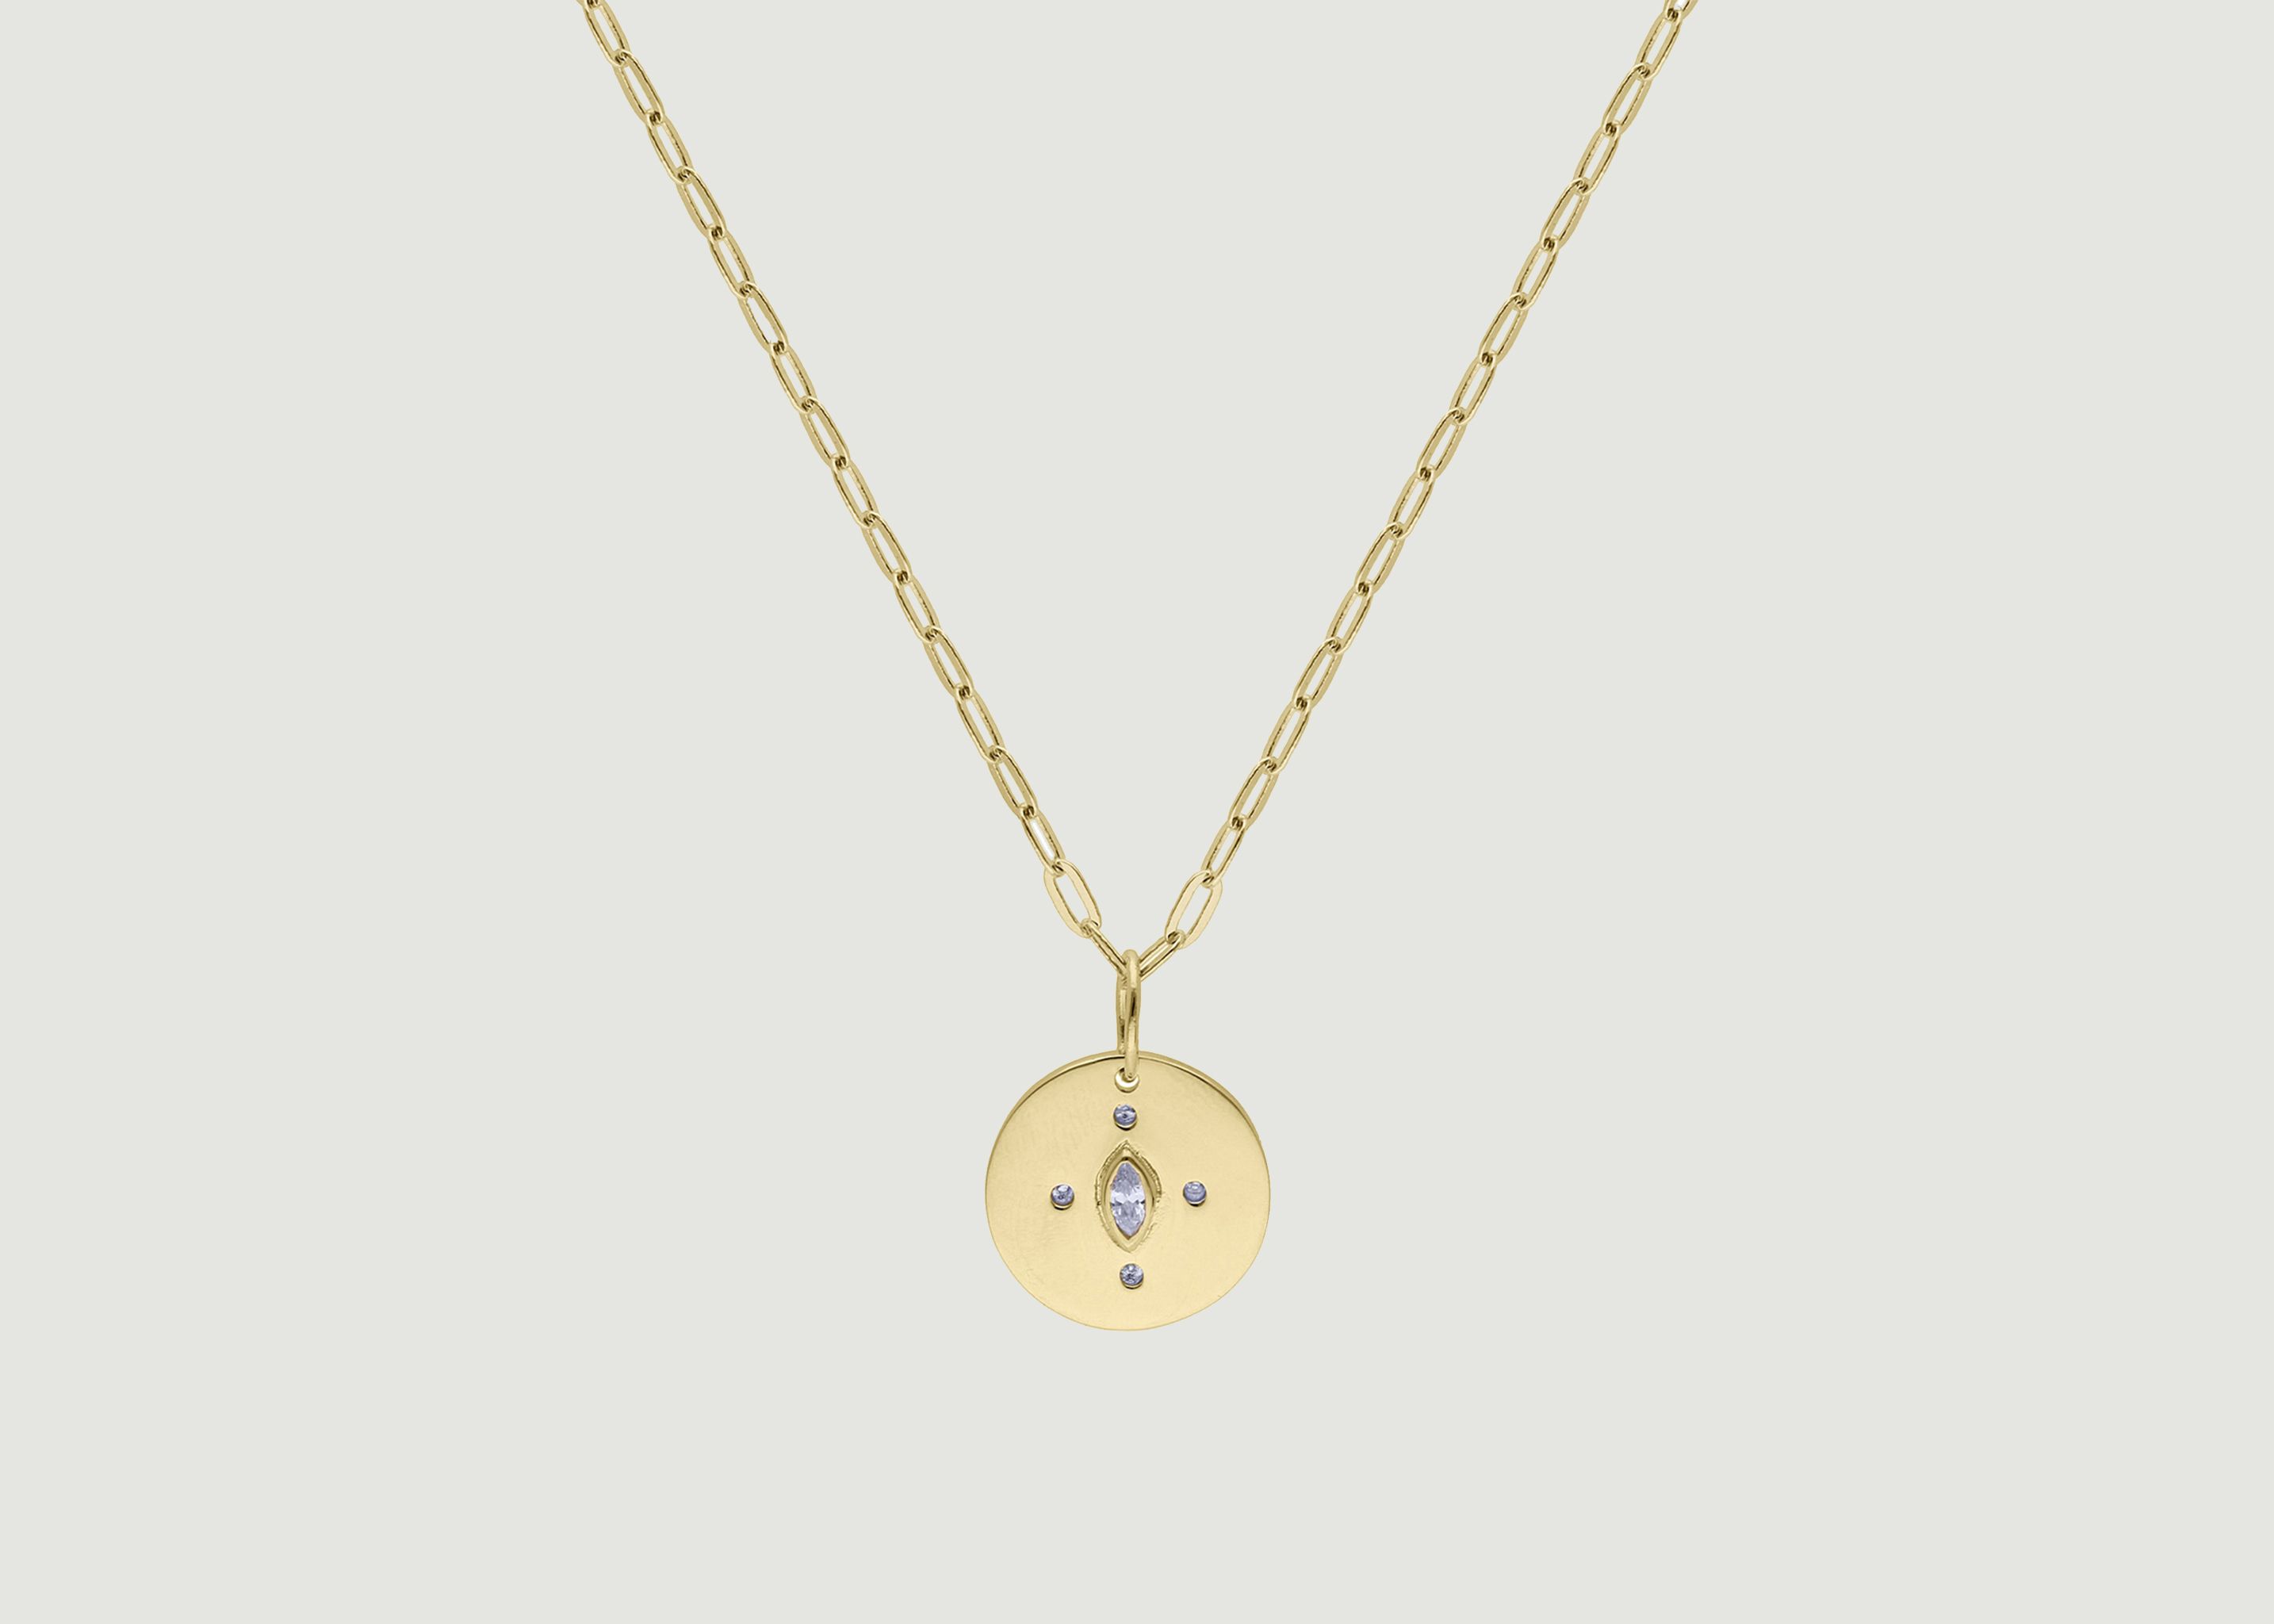 Karen necklace with pendant - Luj Paris